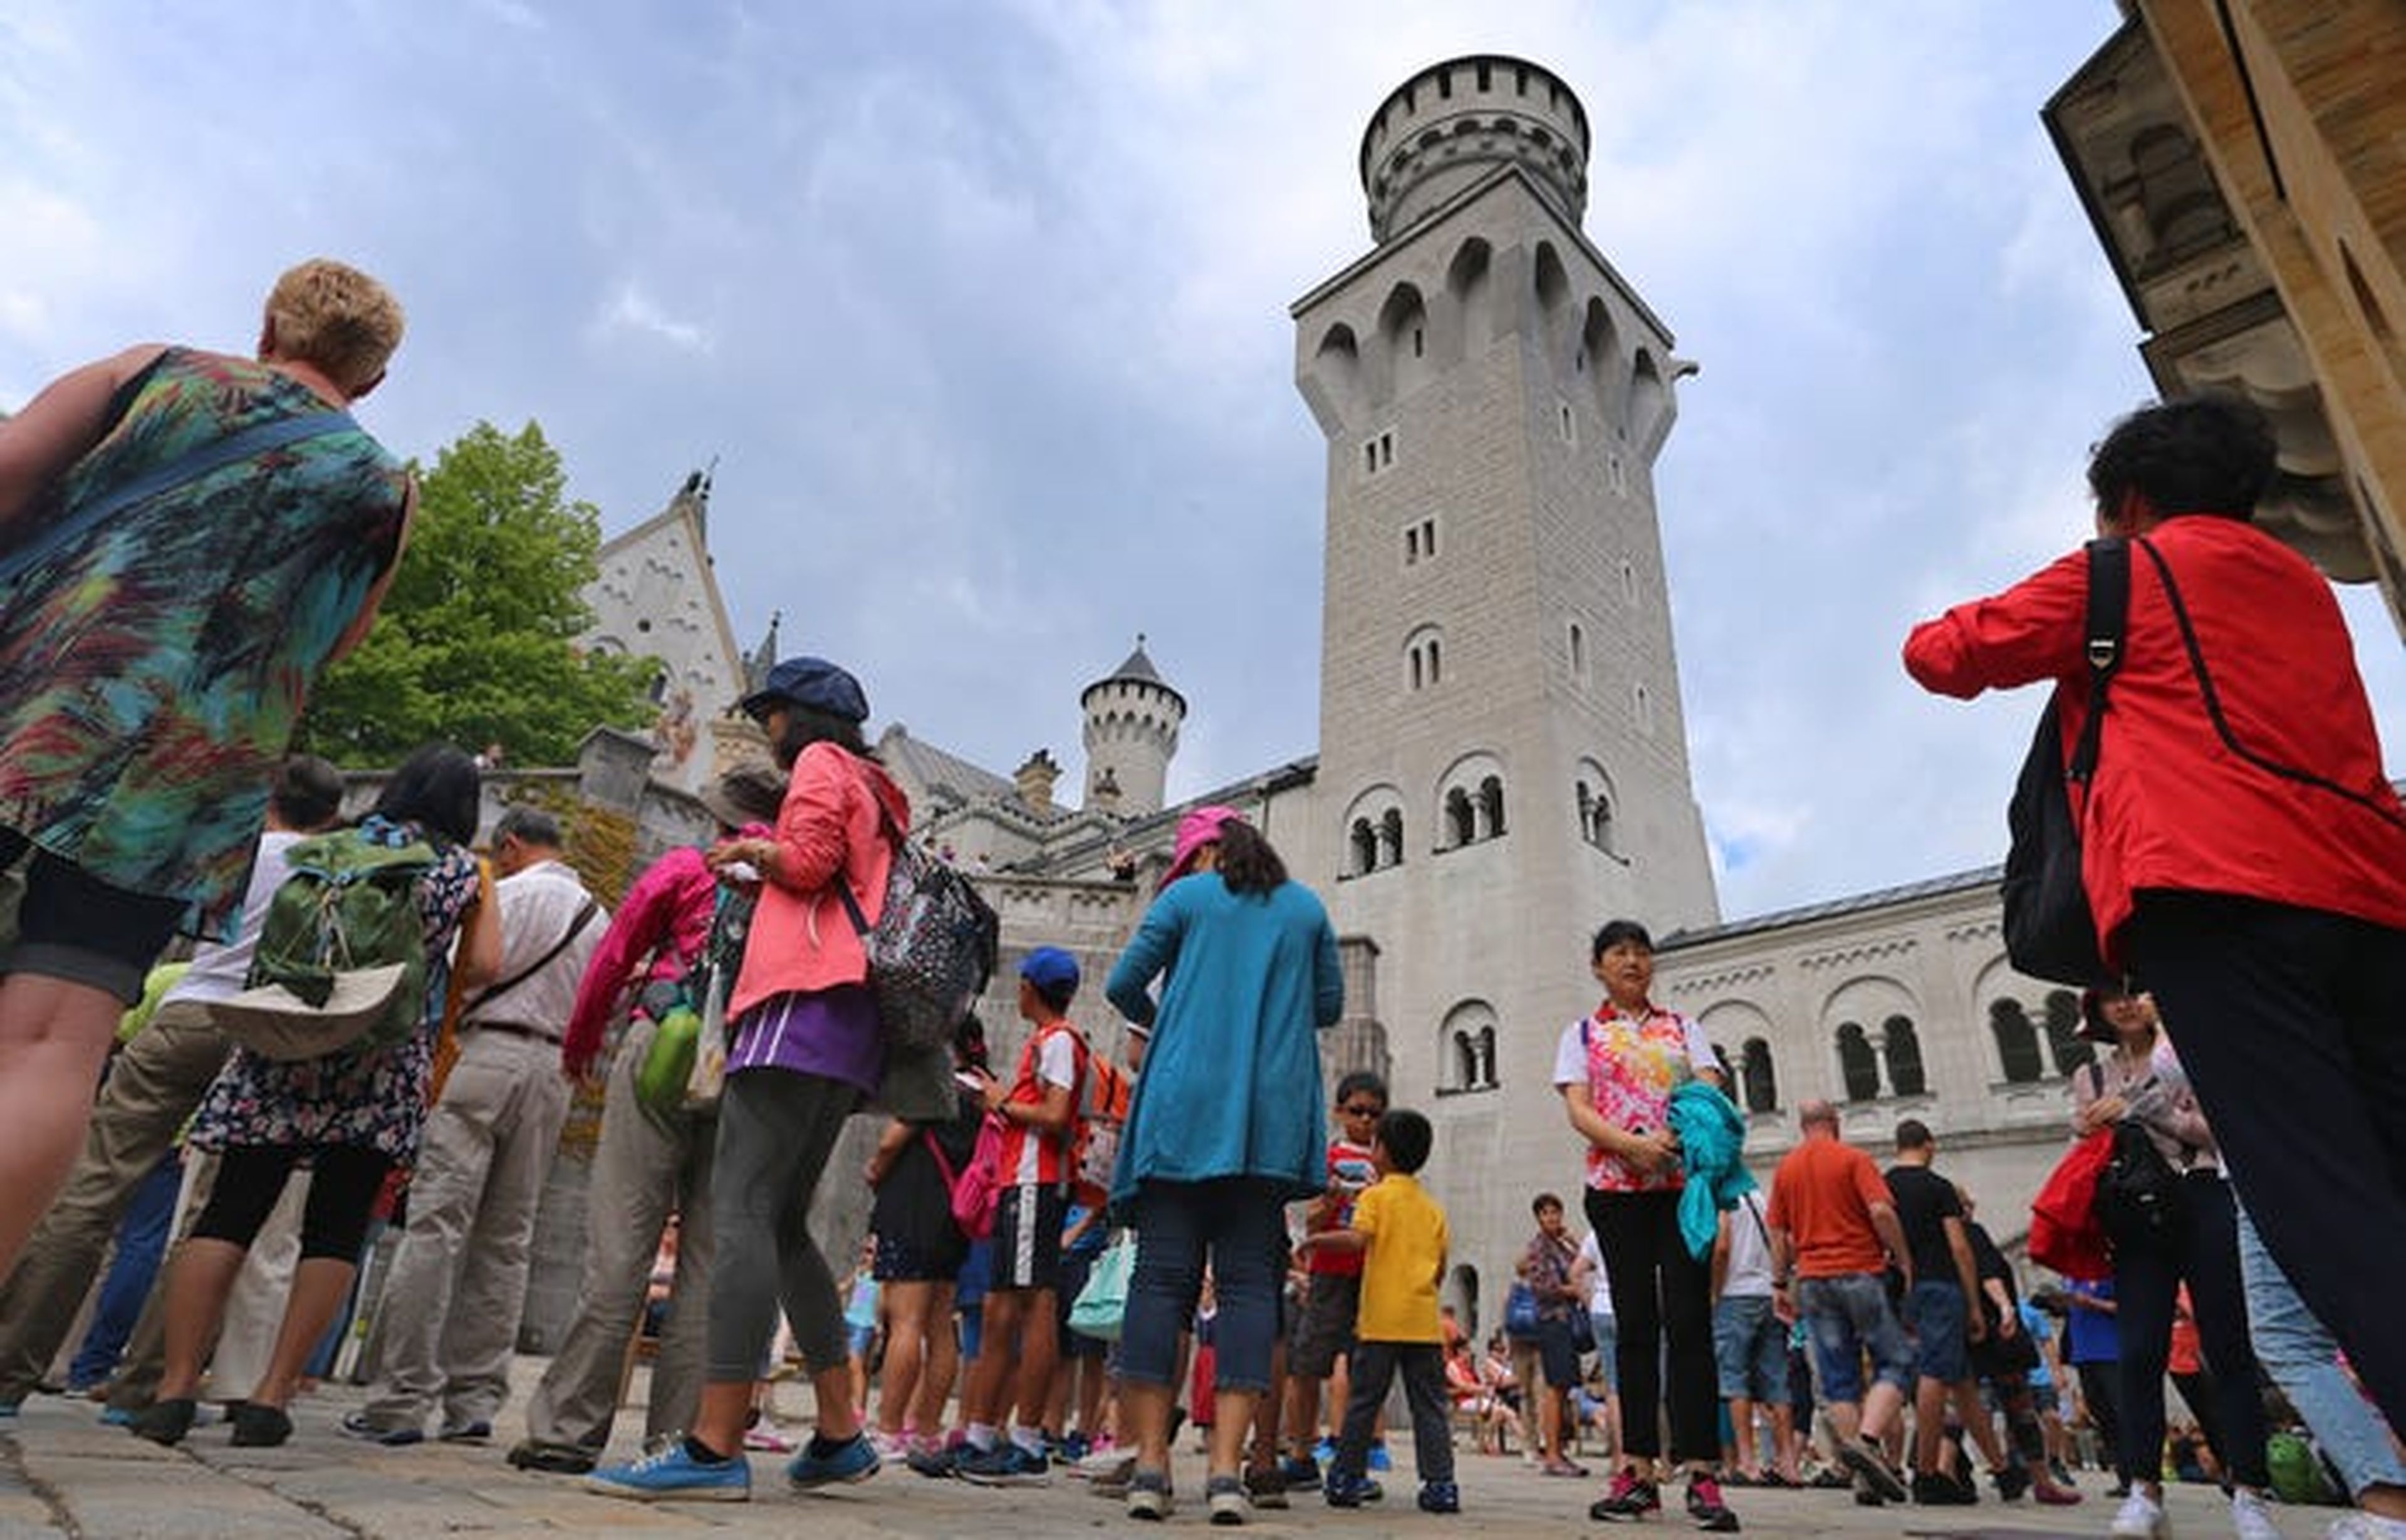 El castillo alemán de Neuschwanstein parece que pertenece a un cuento de hadas, por eso no dejan de llegar turistas